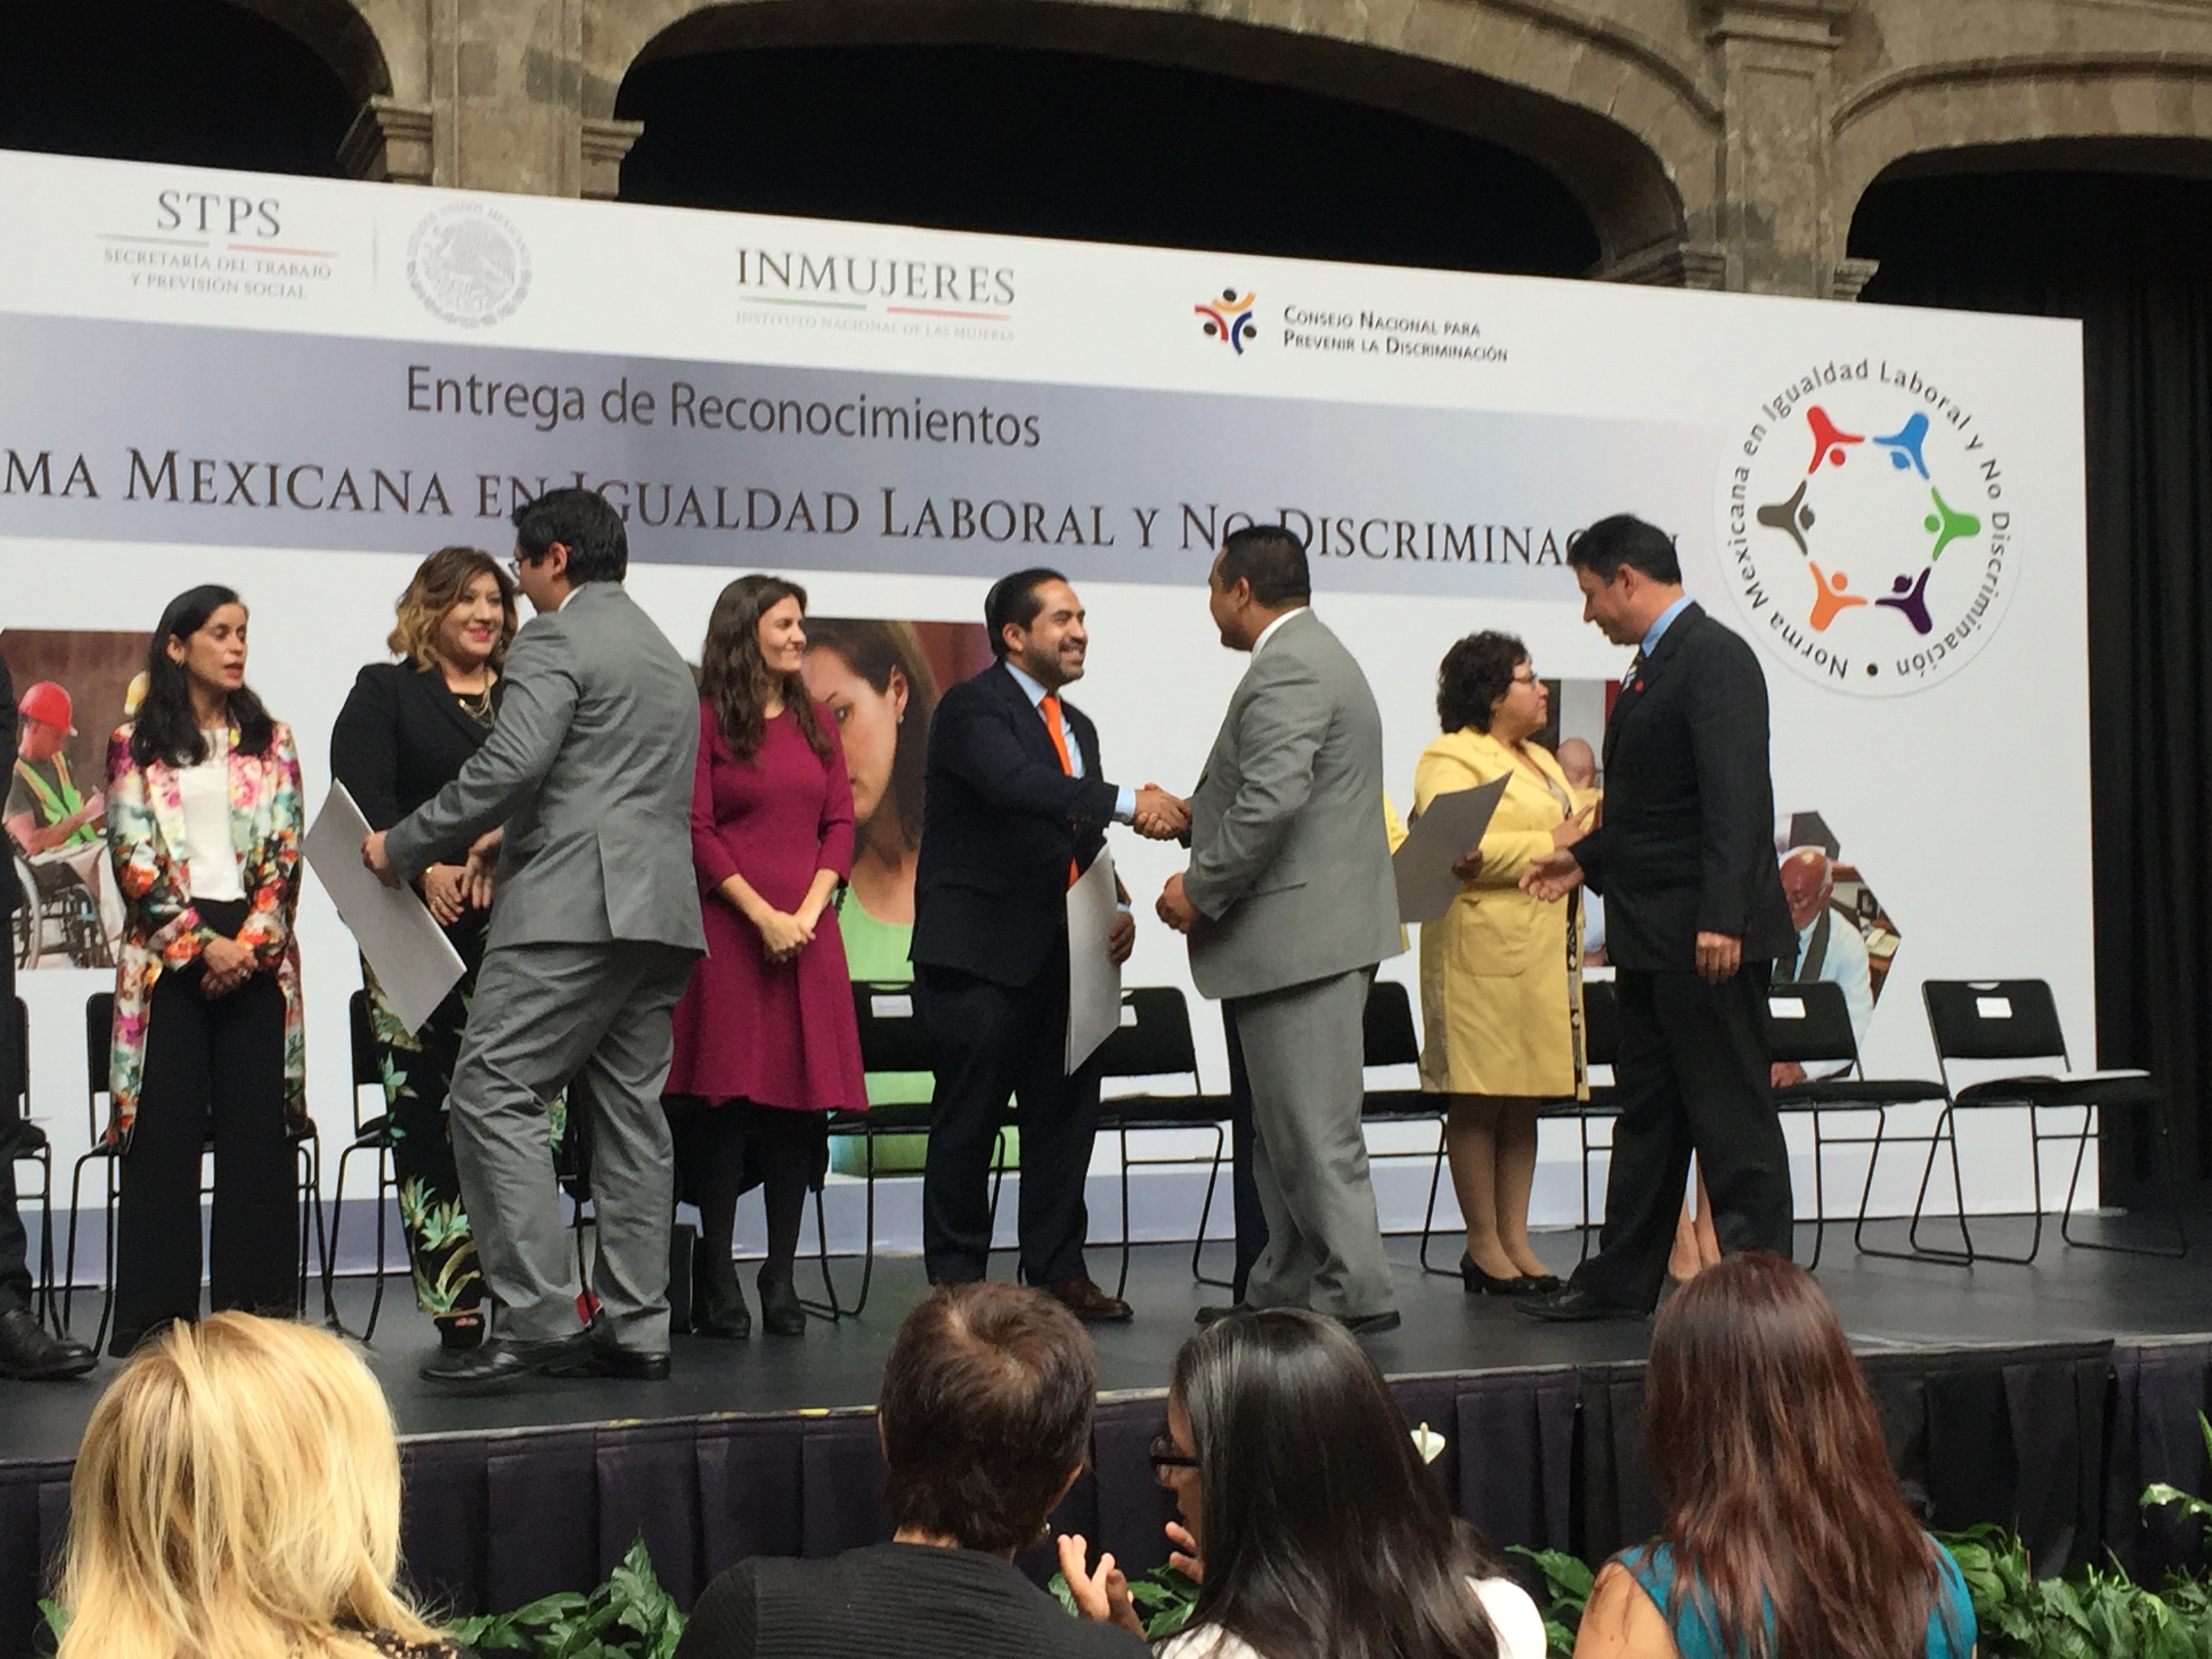 El titular de la STPS felicitando a los galardonados en la entrega de reconocimientos de la Norma Mexicana en Igualdad Laboral y No Discriminación